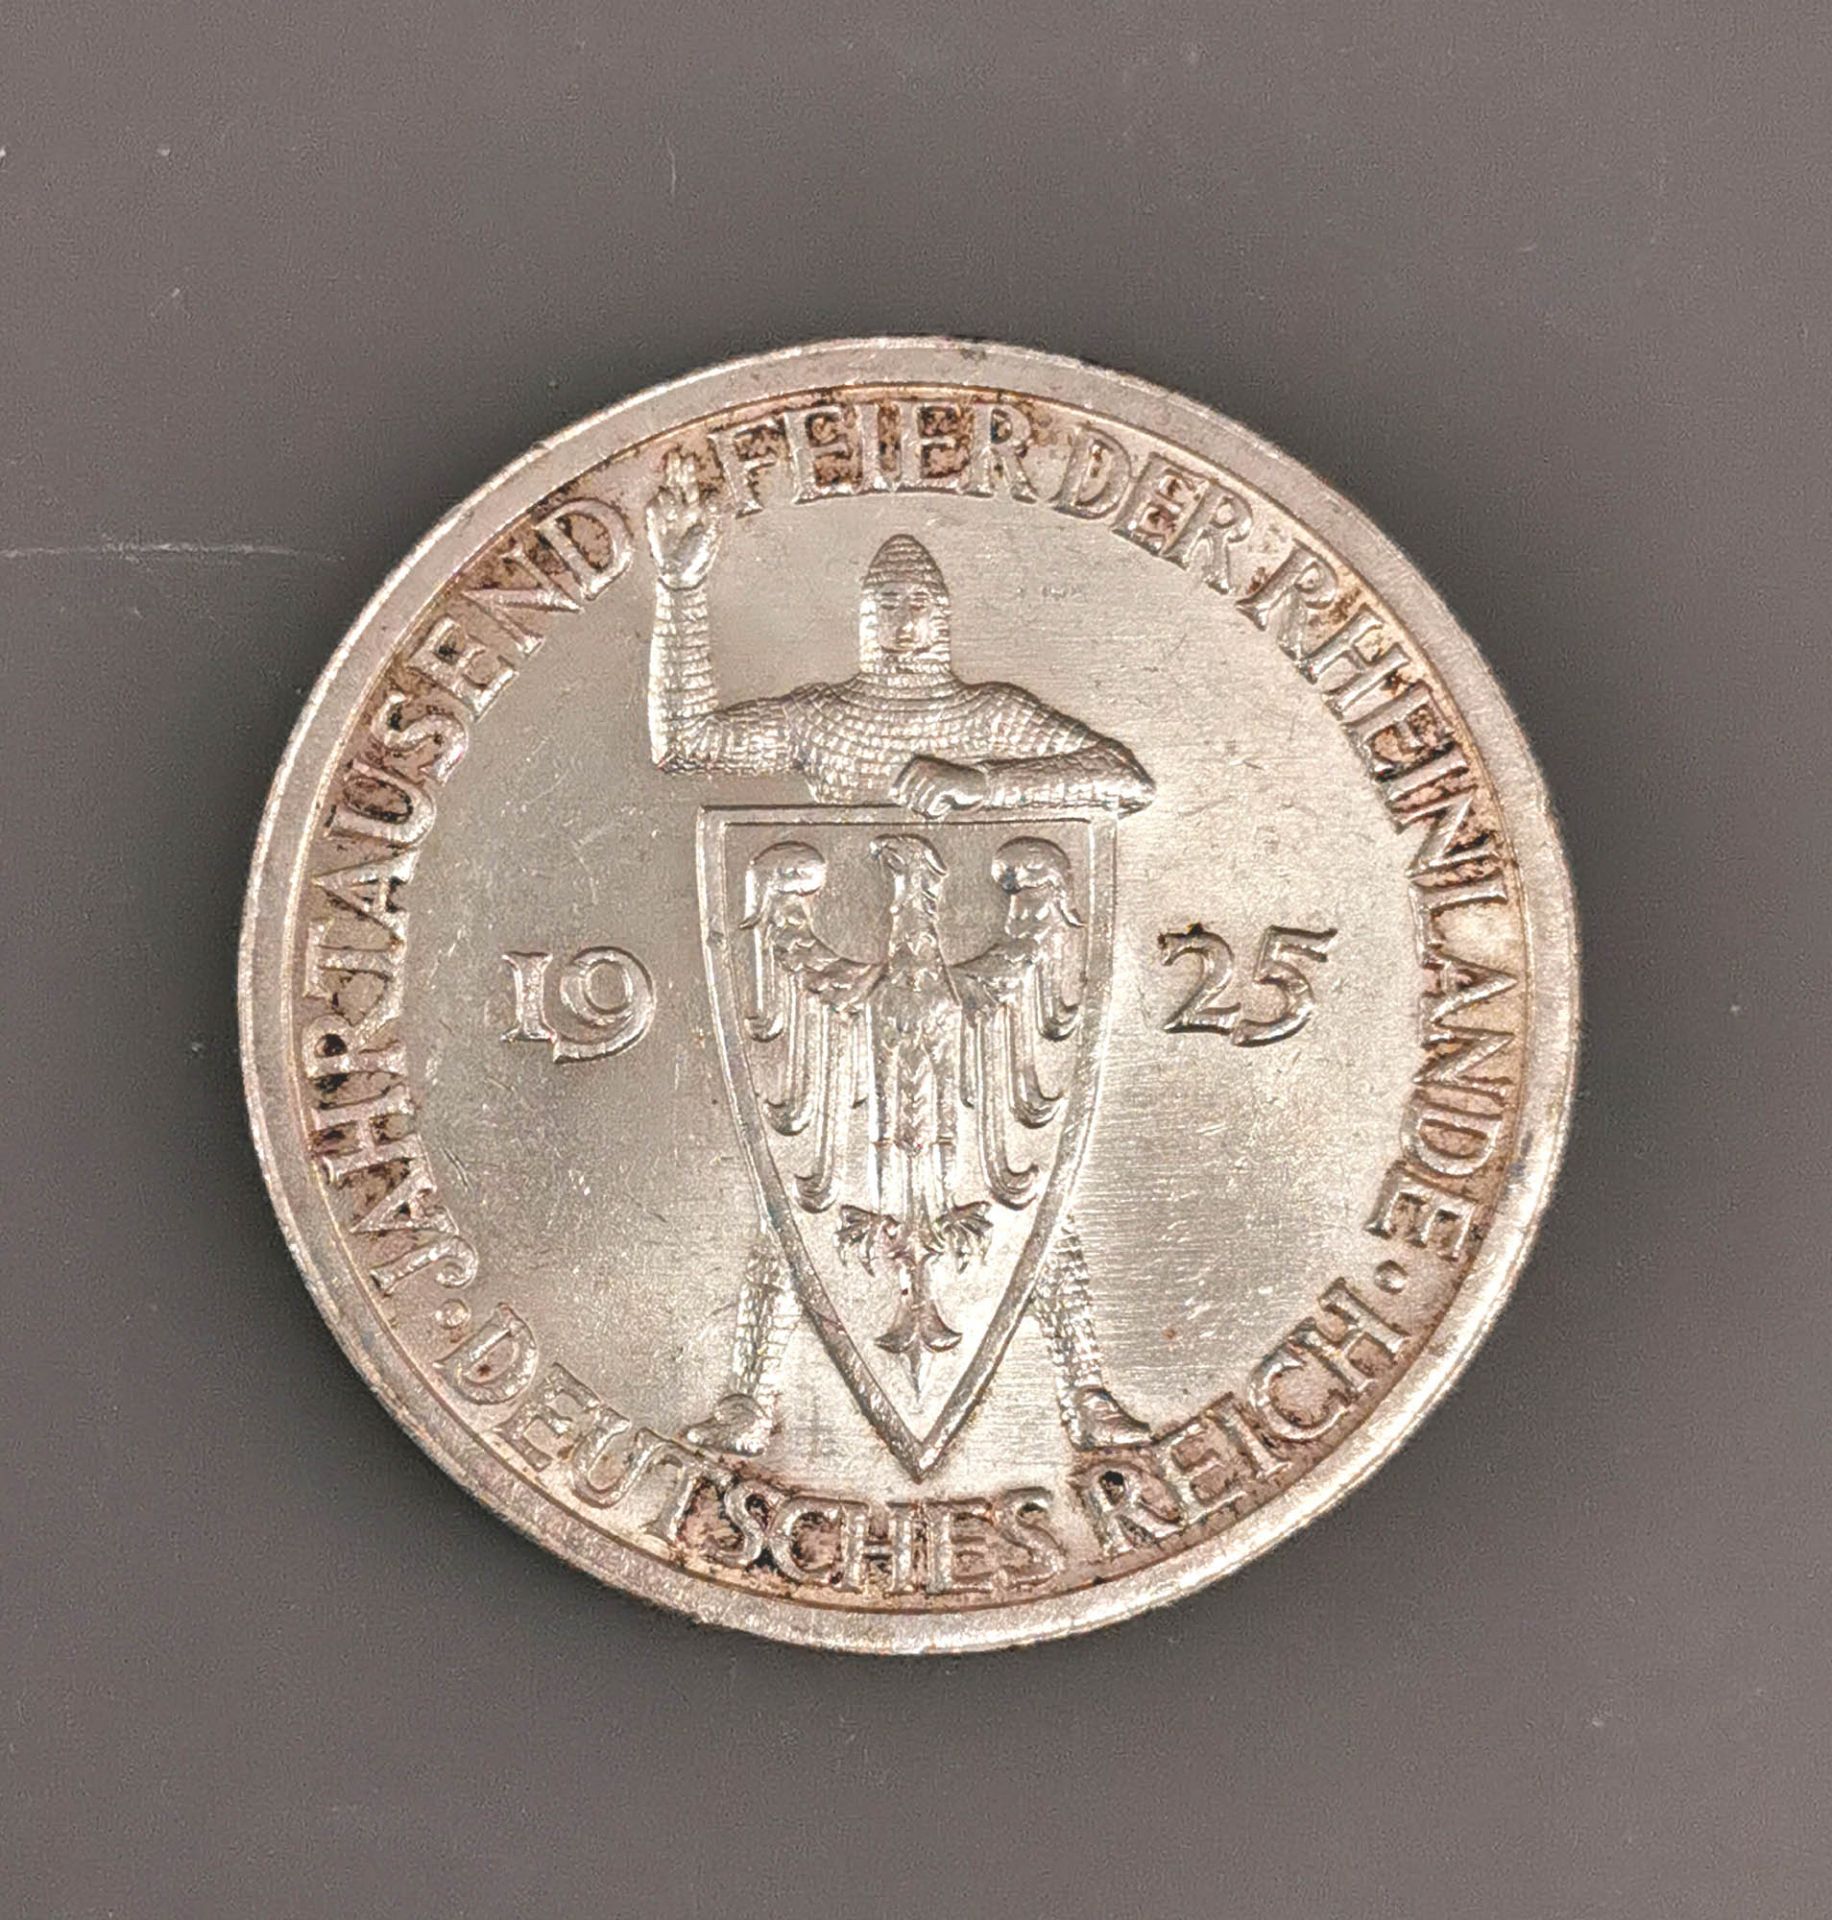 Silber 3 Reichsmark Deutsches Reich 1925 Jahrtausendfeier Rheinland - Image 4 of 4